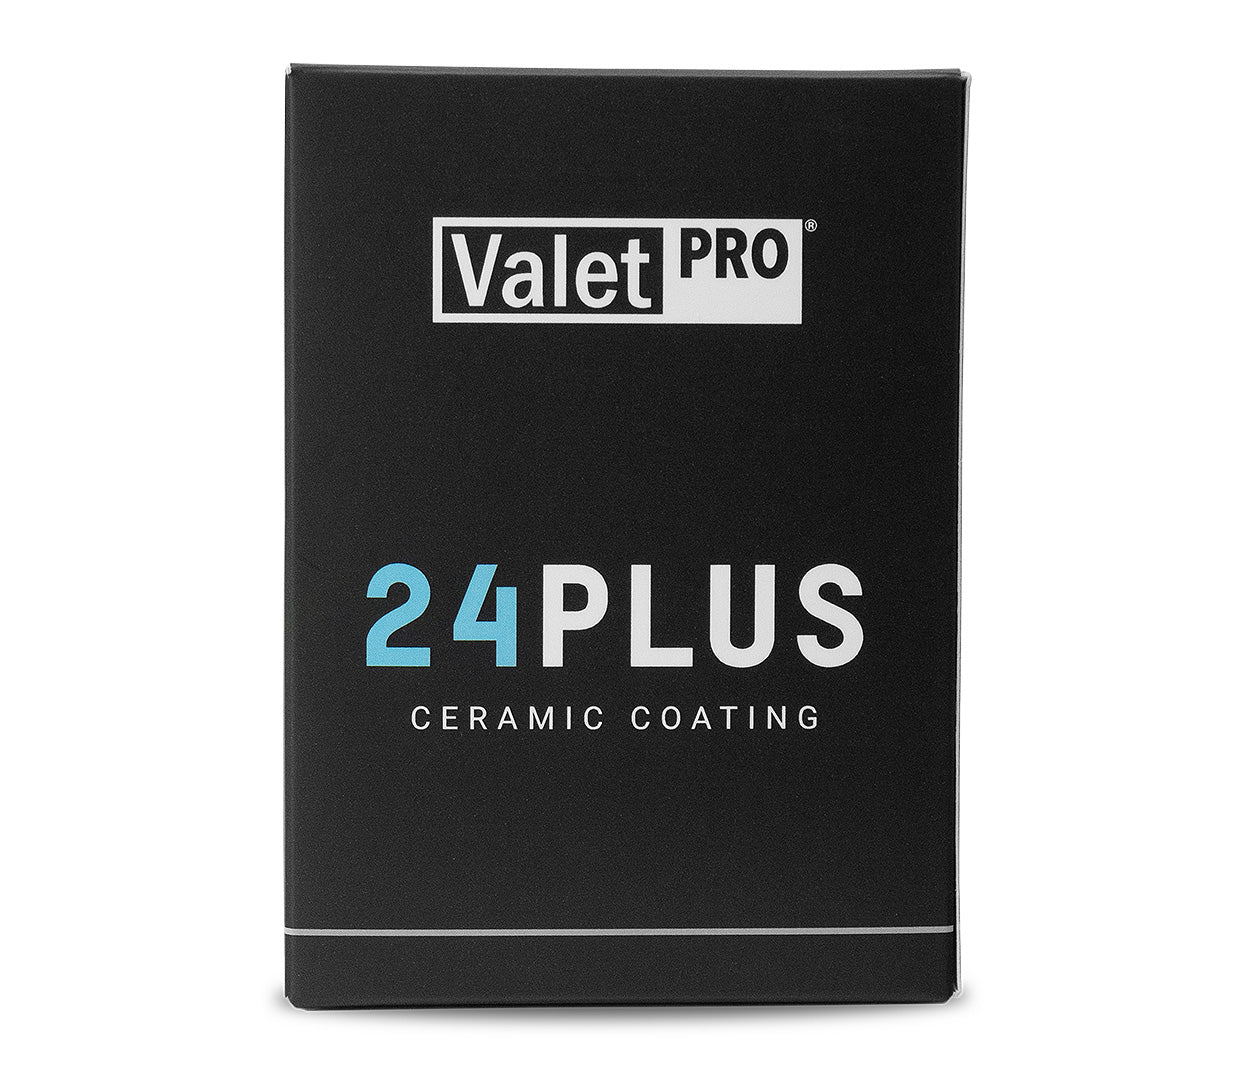 Valet PRO - 24 Plus Ceramic Coating